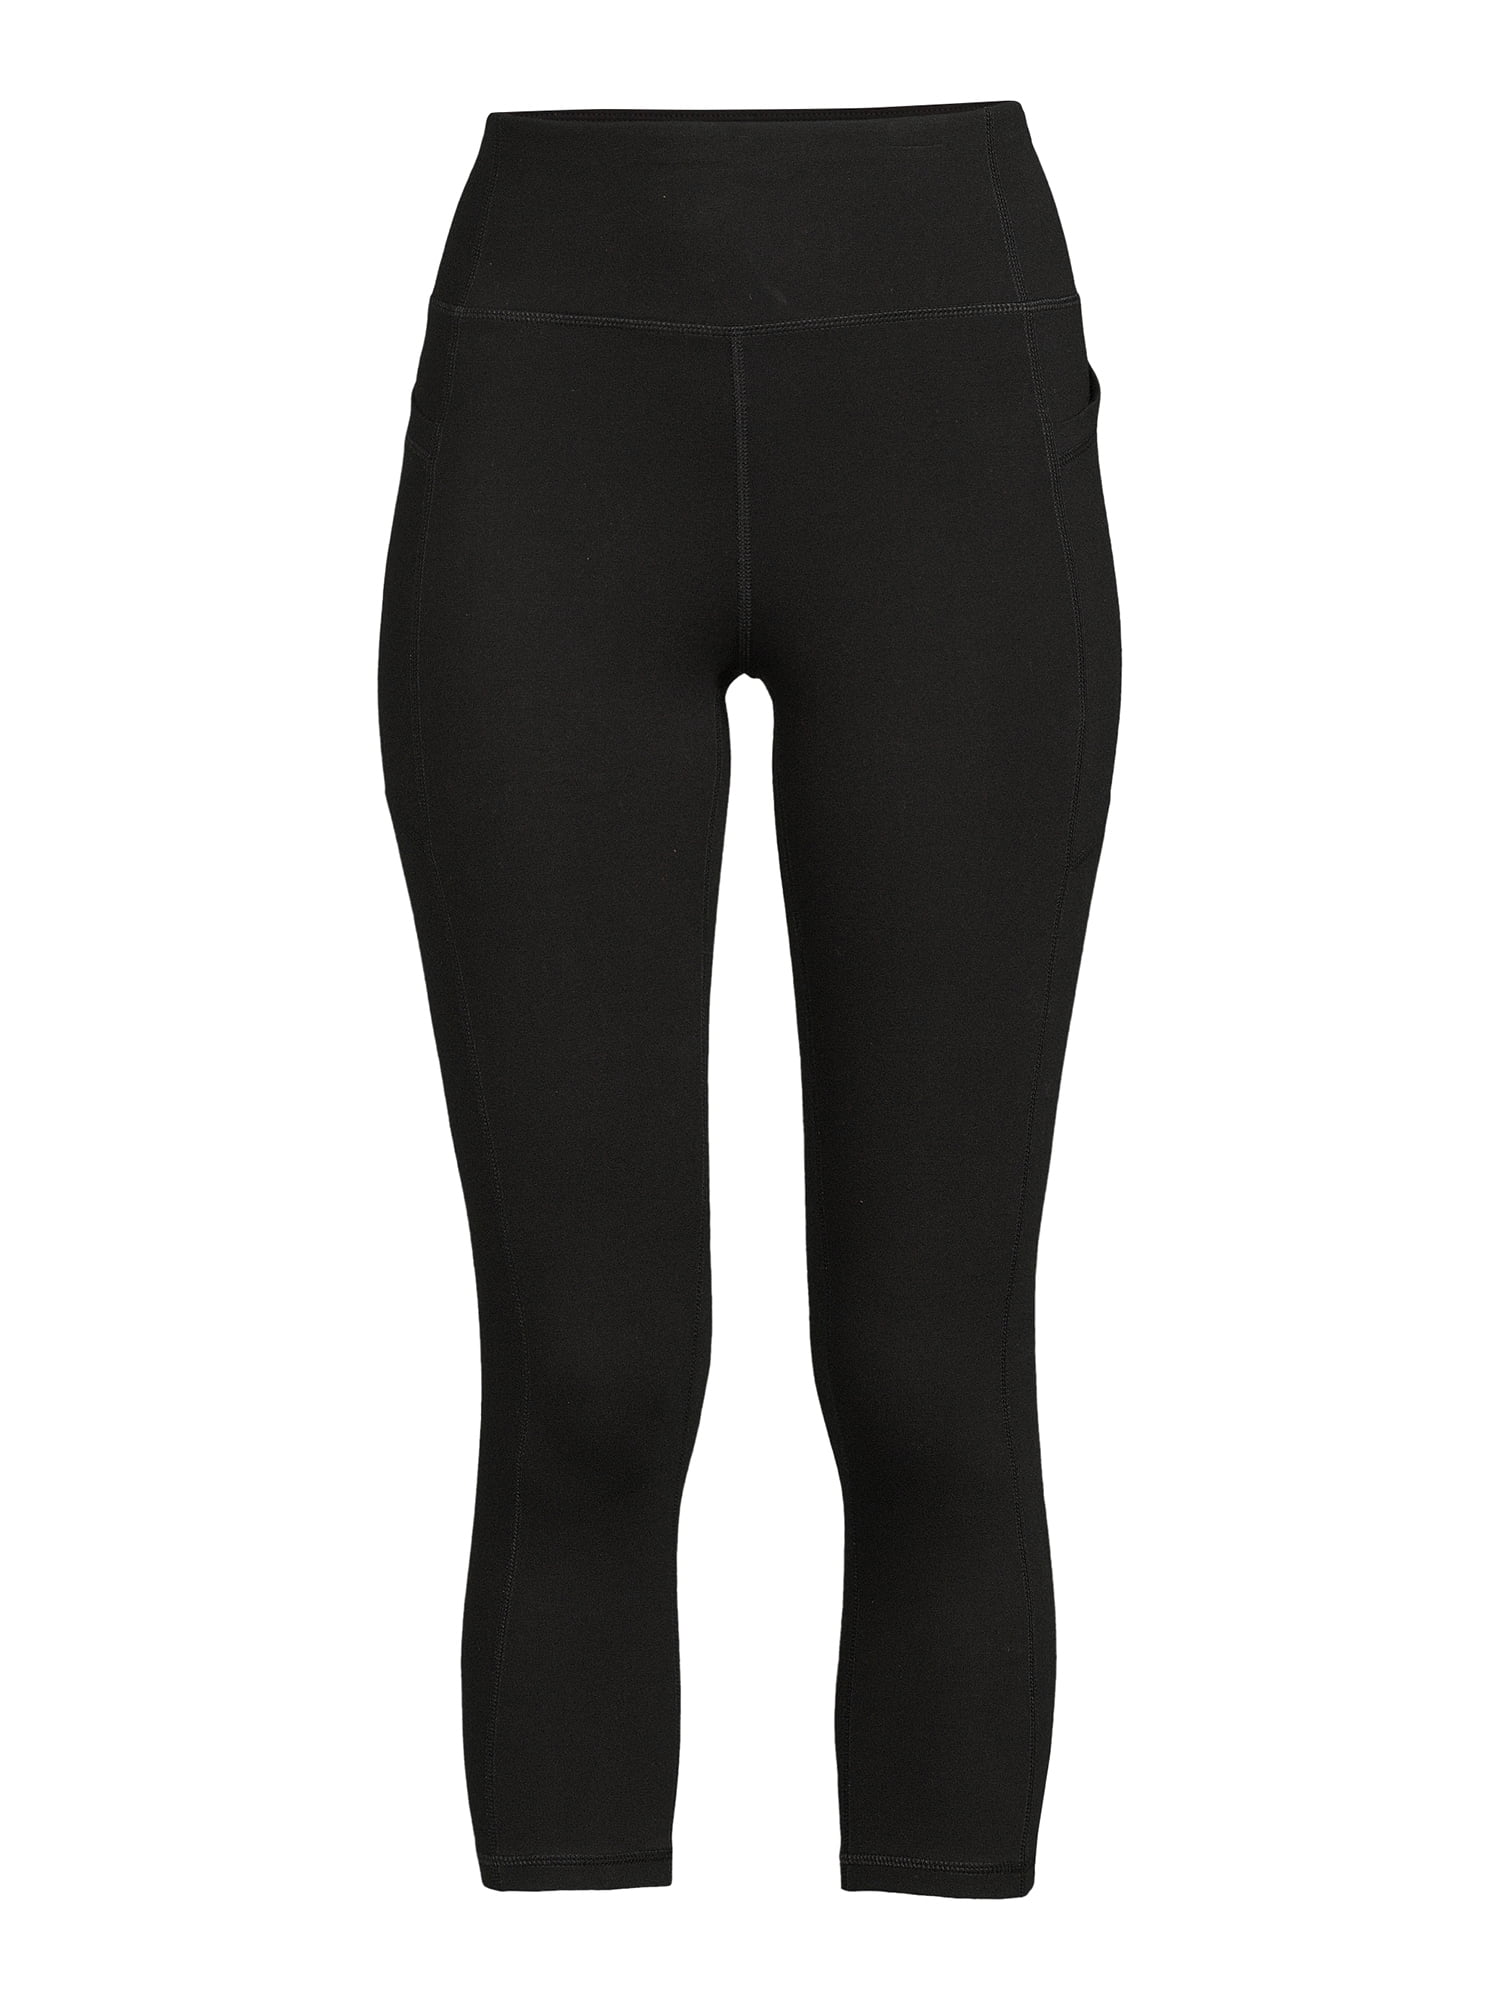 avia Avia Women's Stretch Cotton Blend Capri Leggings with Side Pockets -  Walmart.com